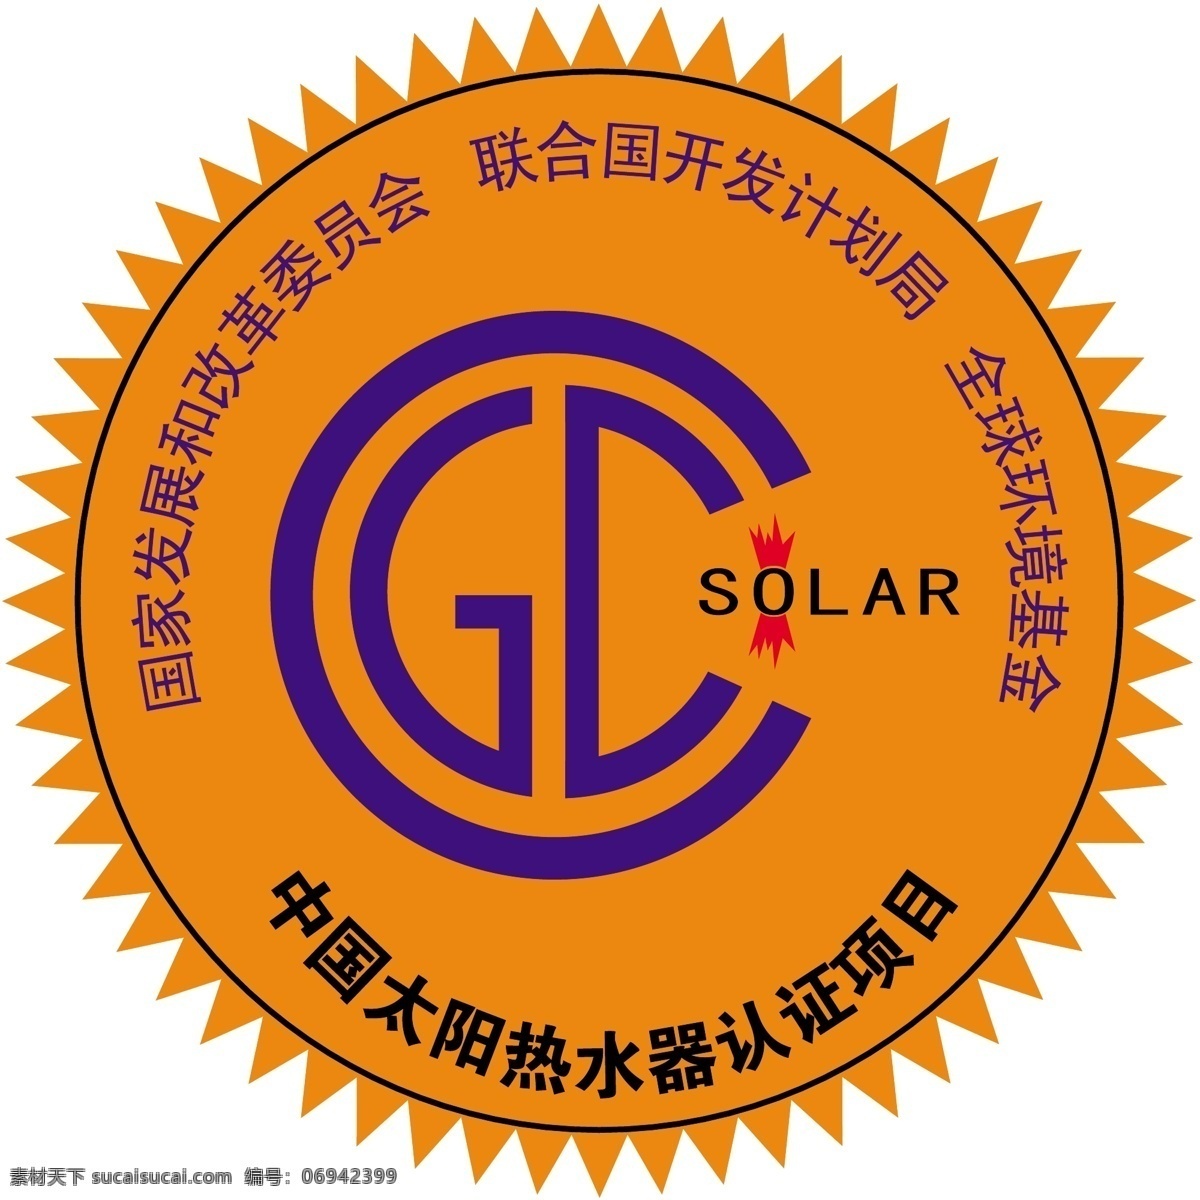 太阳能 热水器 金太阳 认证 标志 标识标志图标 公共标识标志 金太阳认证 矢量 矢量图 日常生活